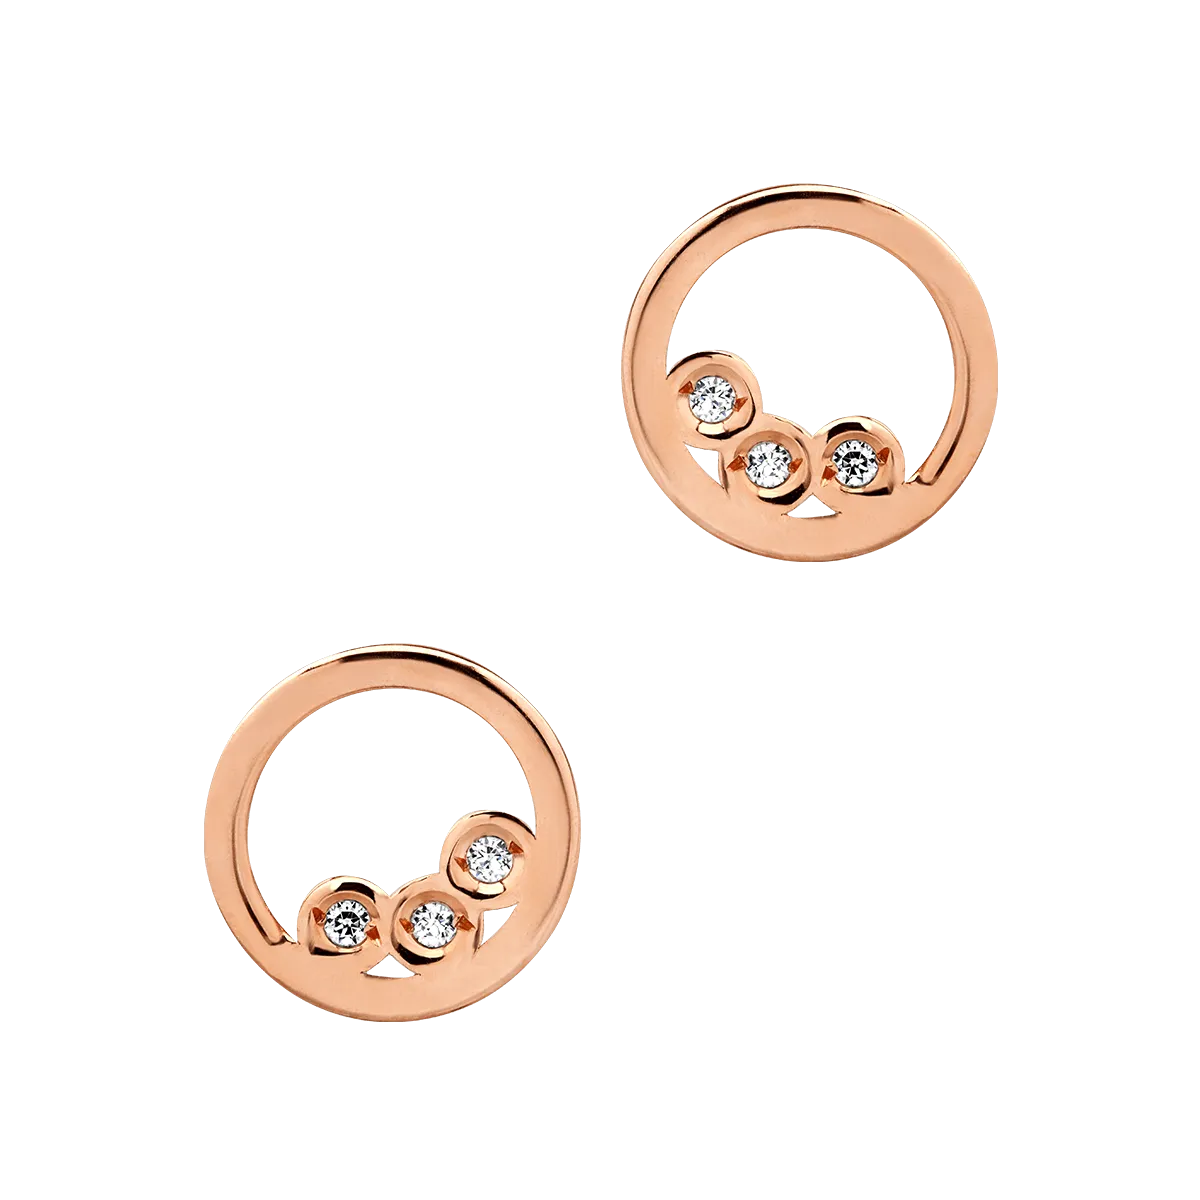 14K rose gold earrings